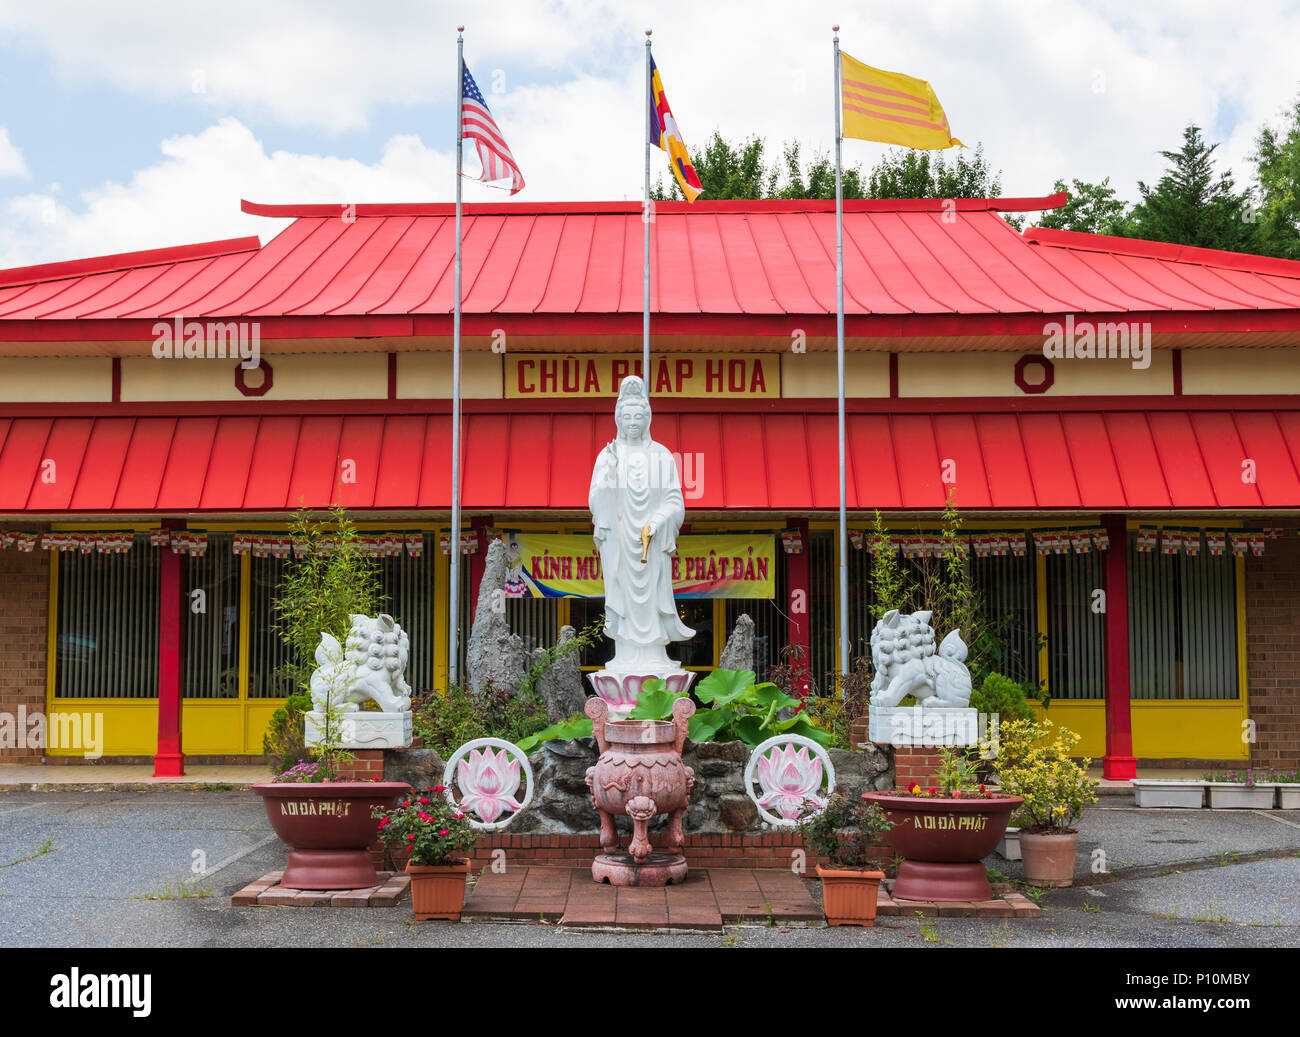 HICKORY, NC, EE.UU-31 18 de mayo: un templo budista vietnamita, chua phap hoa, situada en la pequeña ciudad sureña de Hickory. Foto de stock